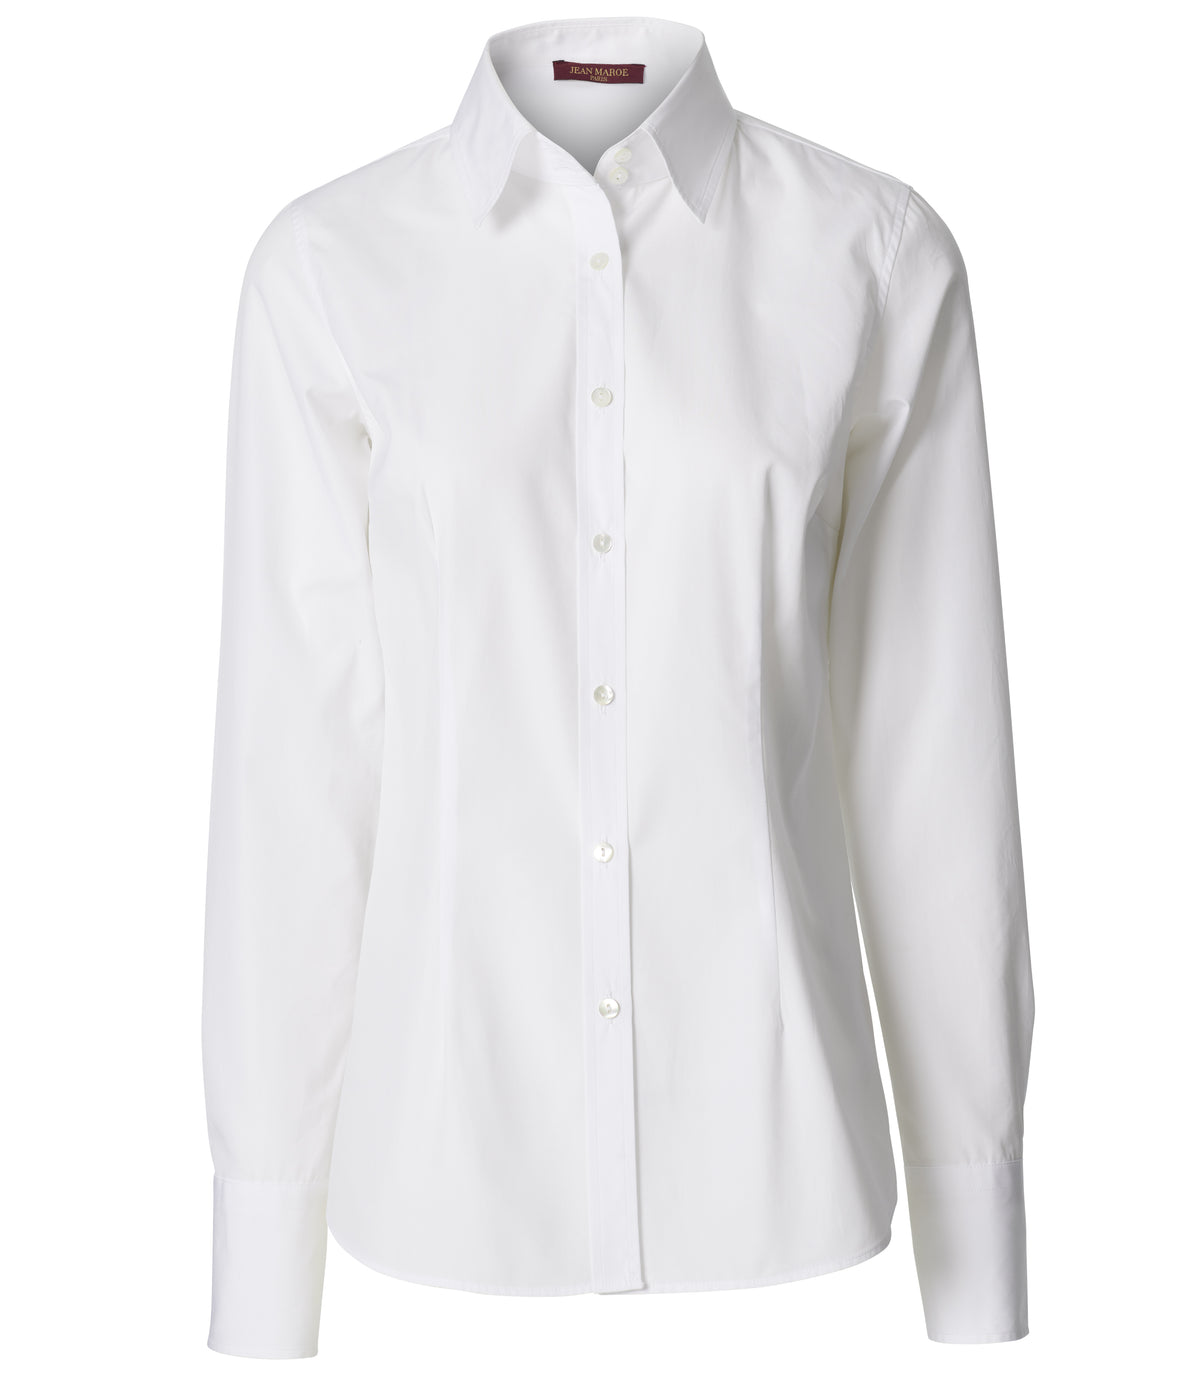 Jean Maroe - Bluse mit Knopfleiste aus Baumwolle, tailliert in weiß